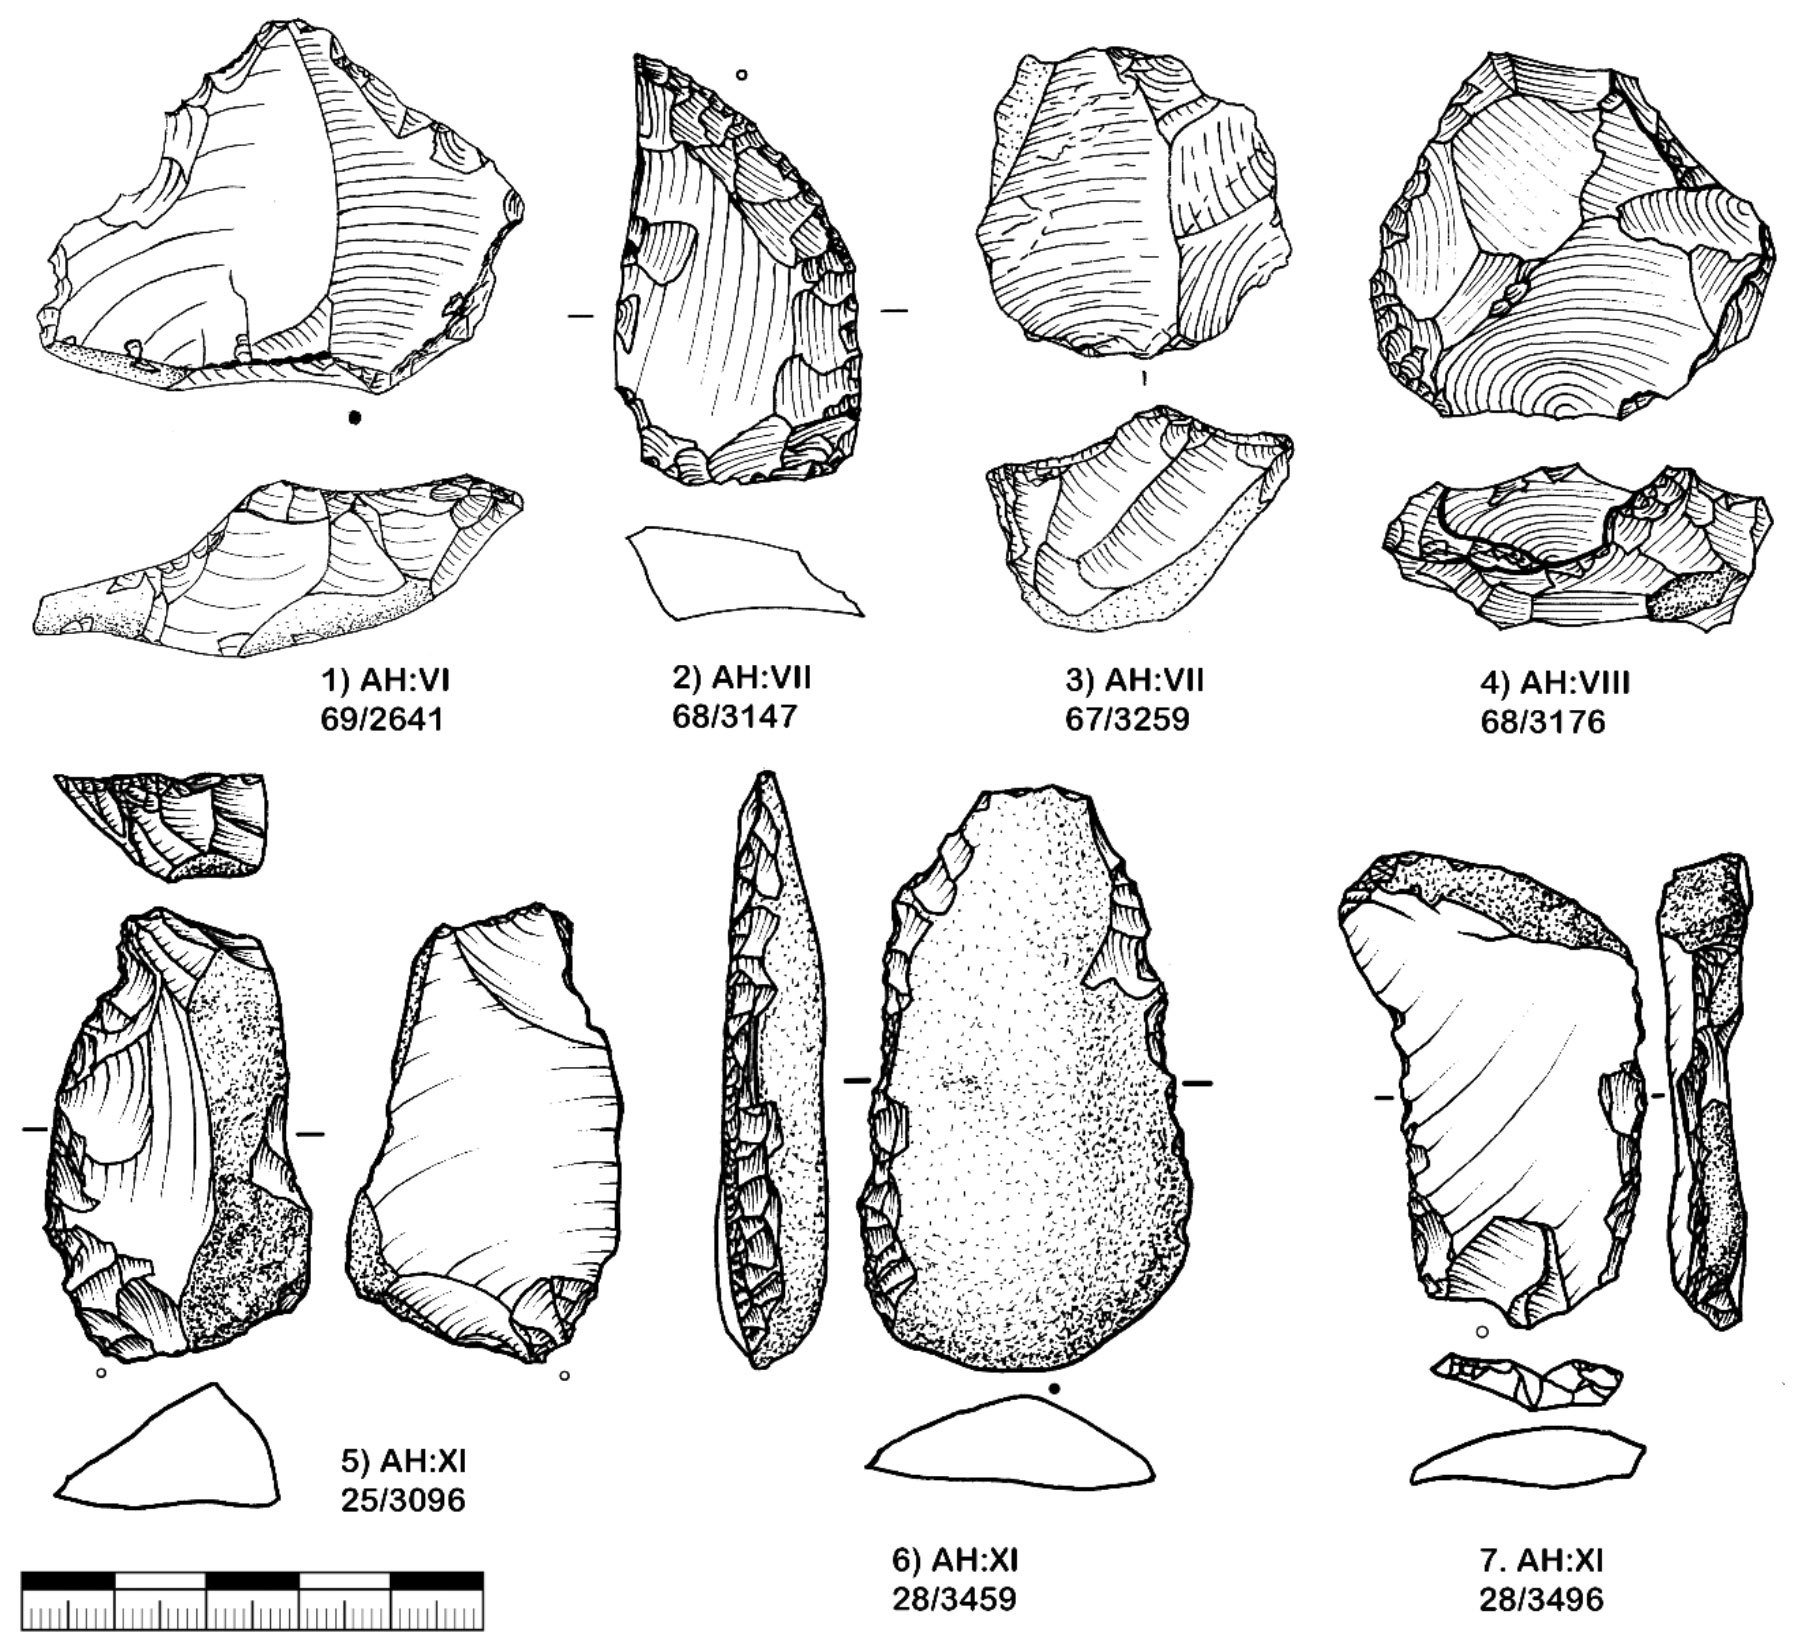 Hohle Fels, Zeichnungen der mittelpaläolithischen Steinartefakte aus den Schichten VI-IX und XI